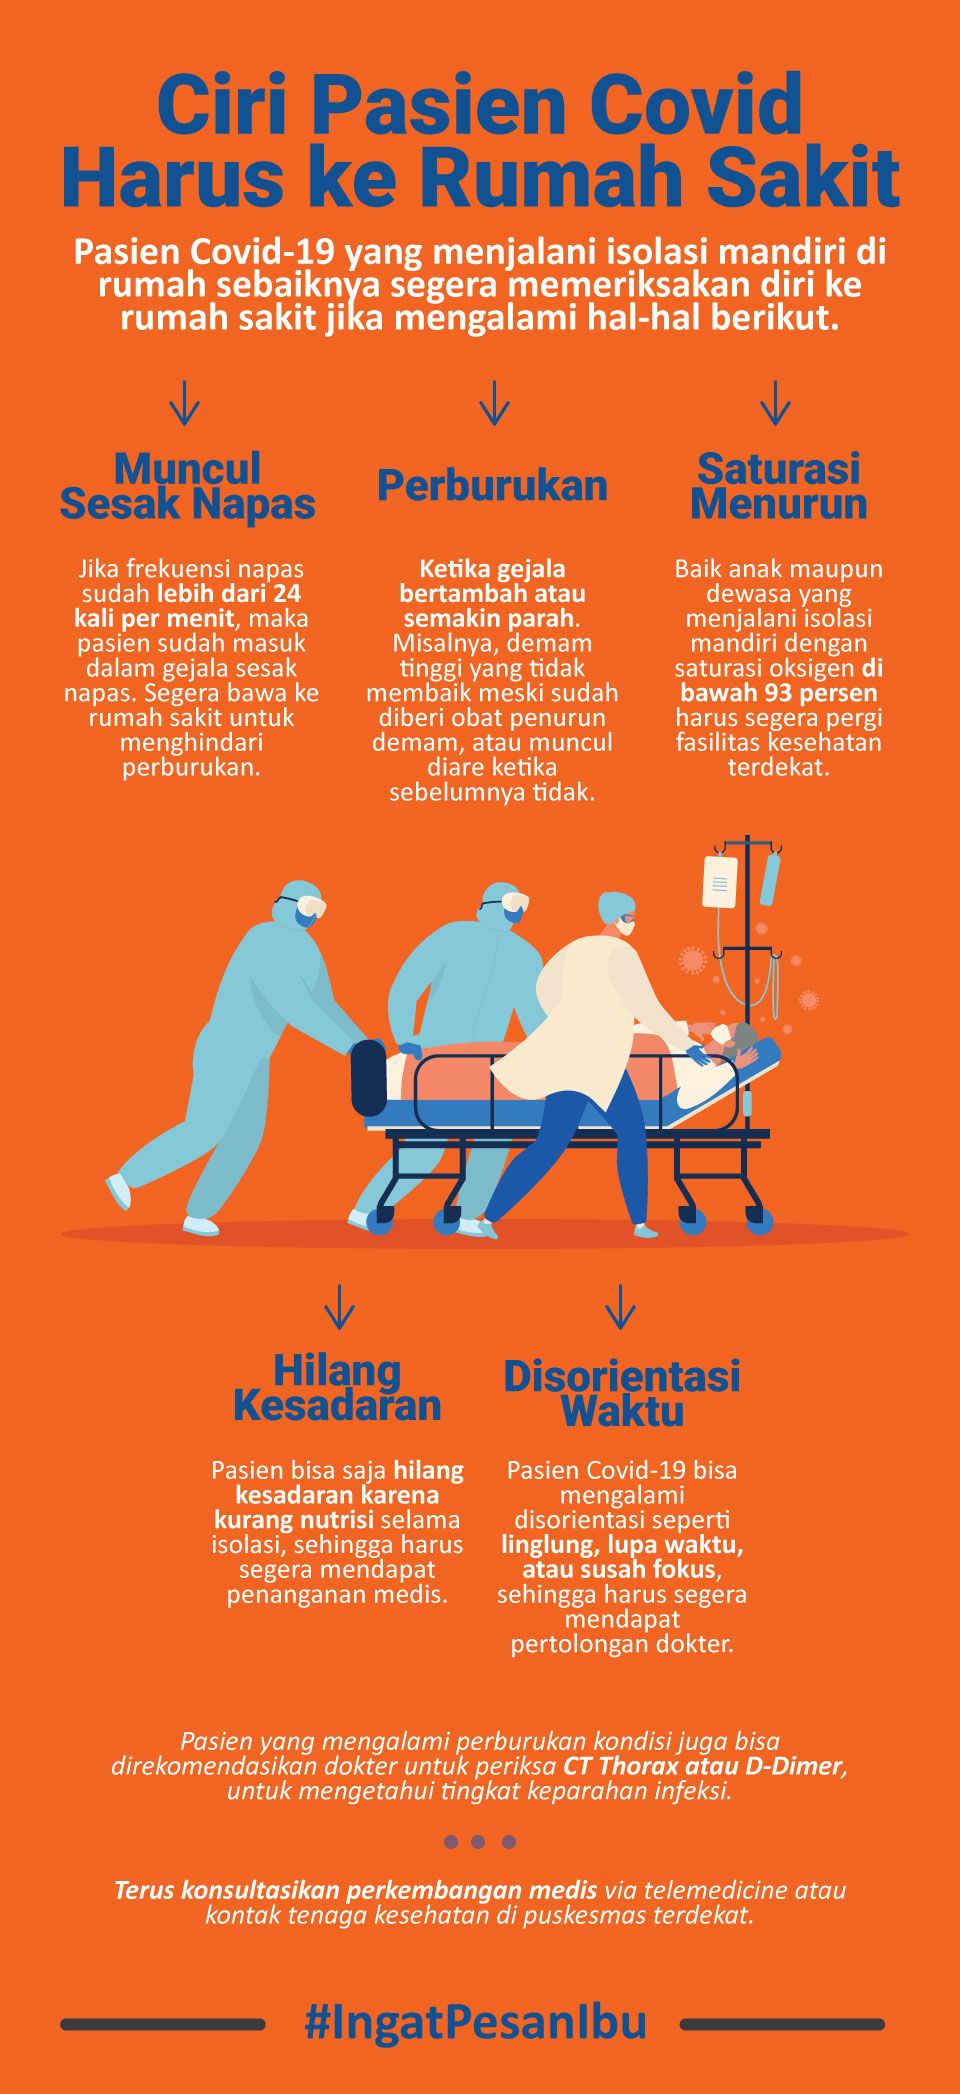 Infografis Ciri Pasien Covid Harus ke Rumah Sakit